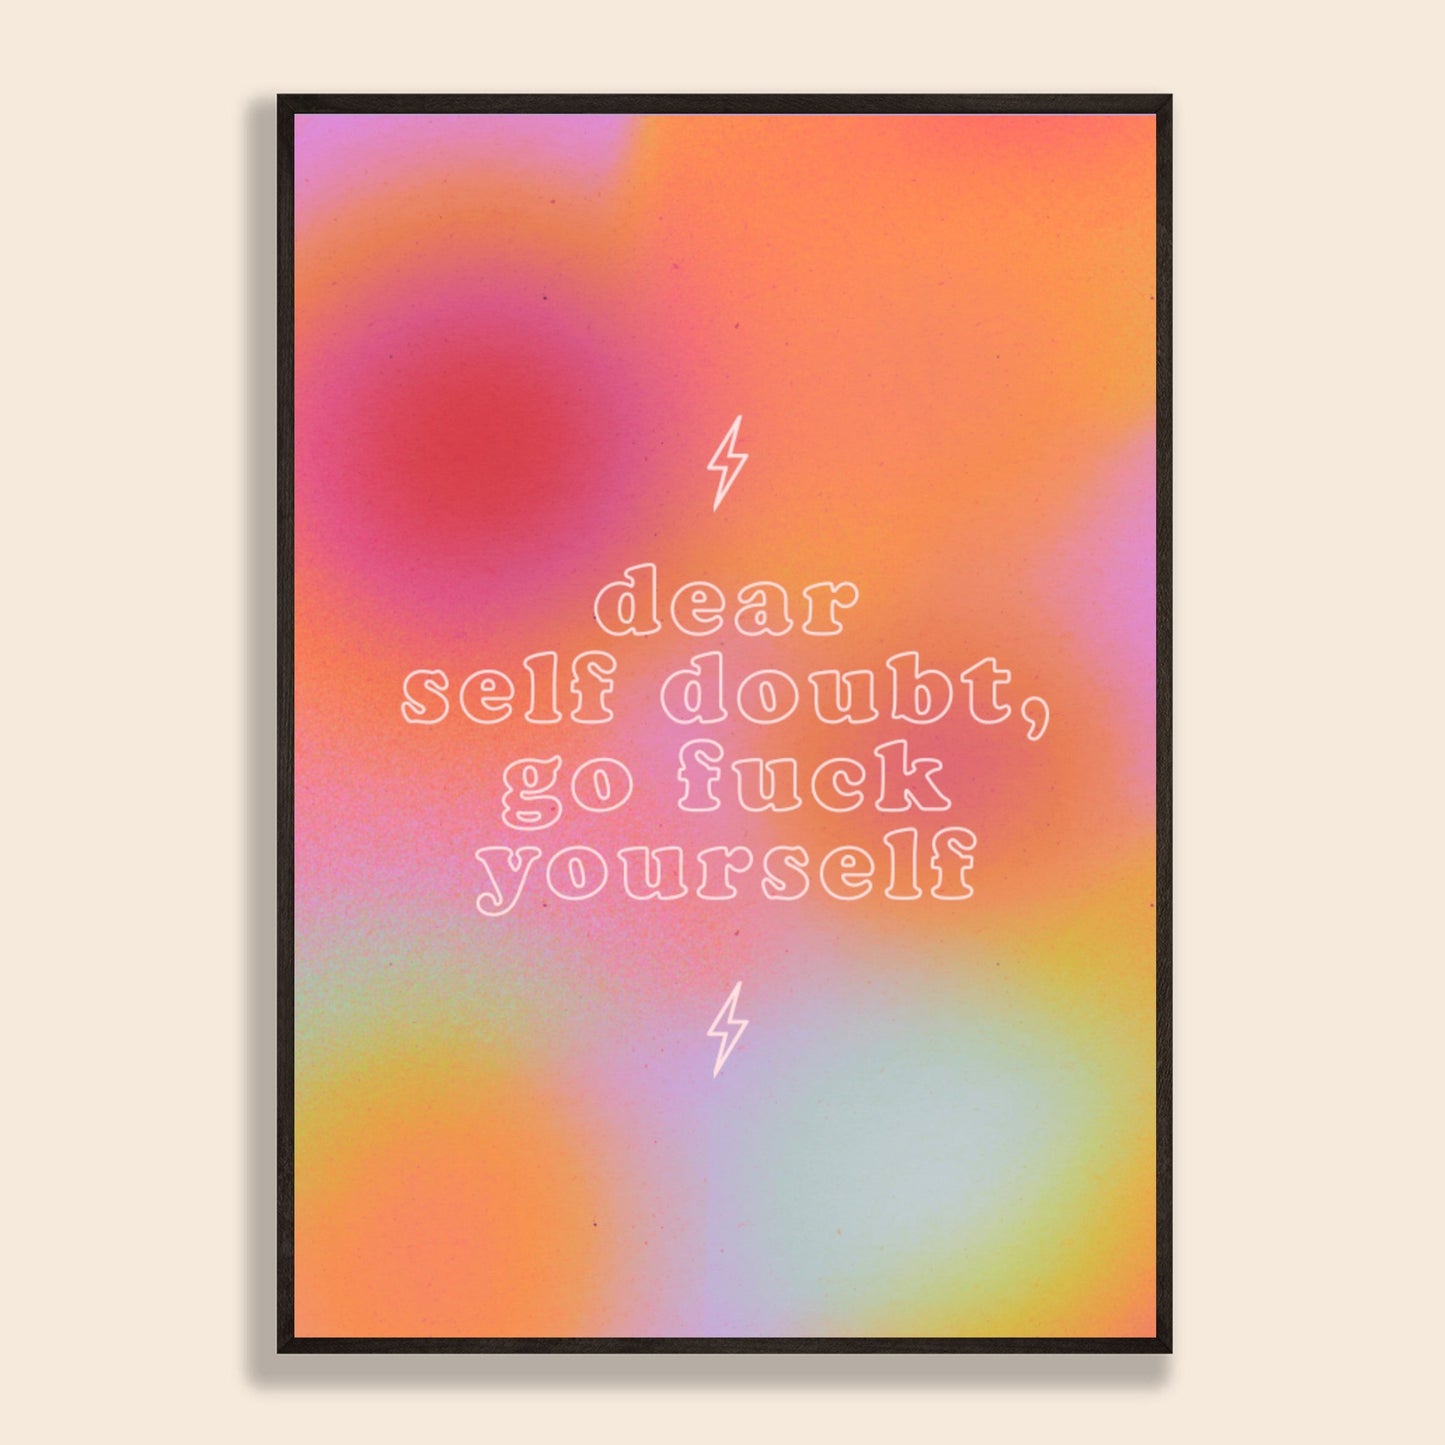 Dear Self Doubt Print